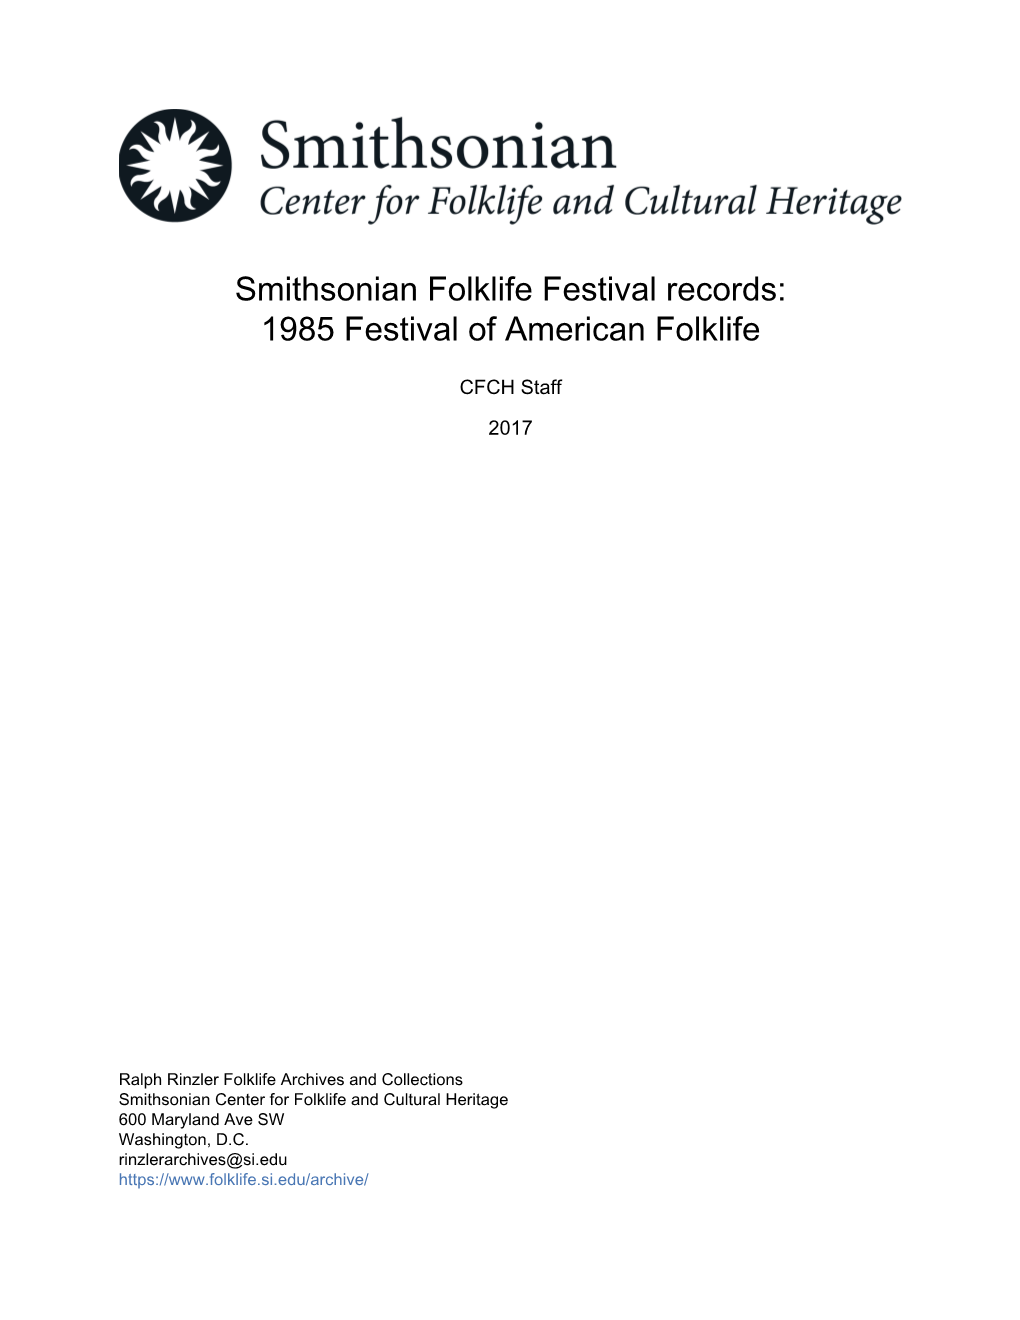 1985 Festival of American Folklife